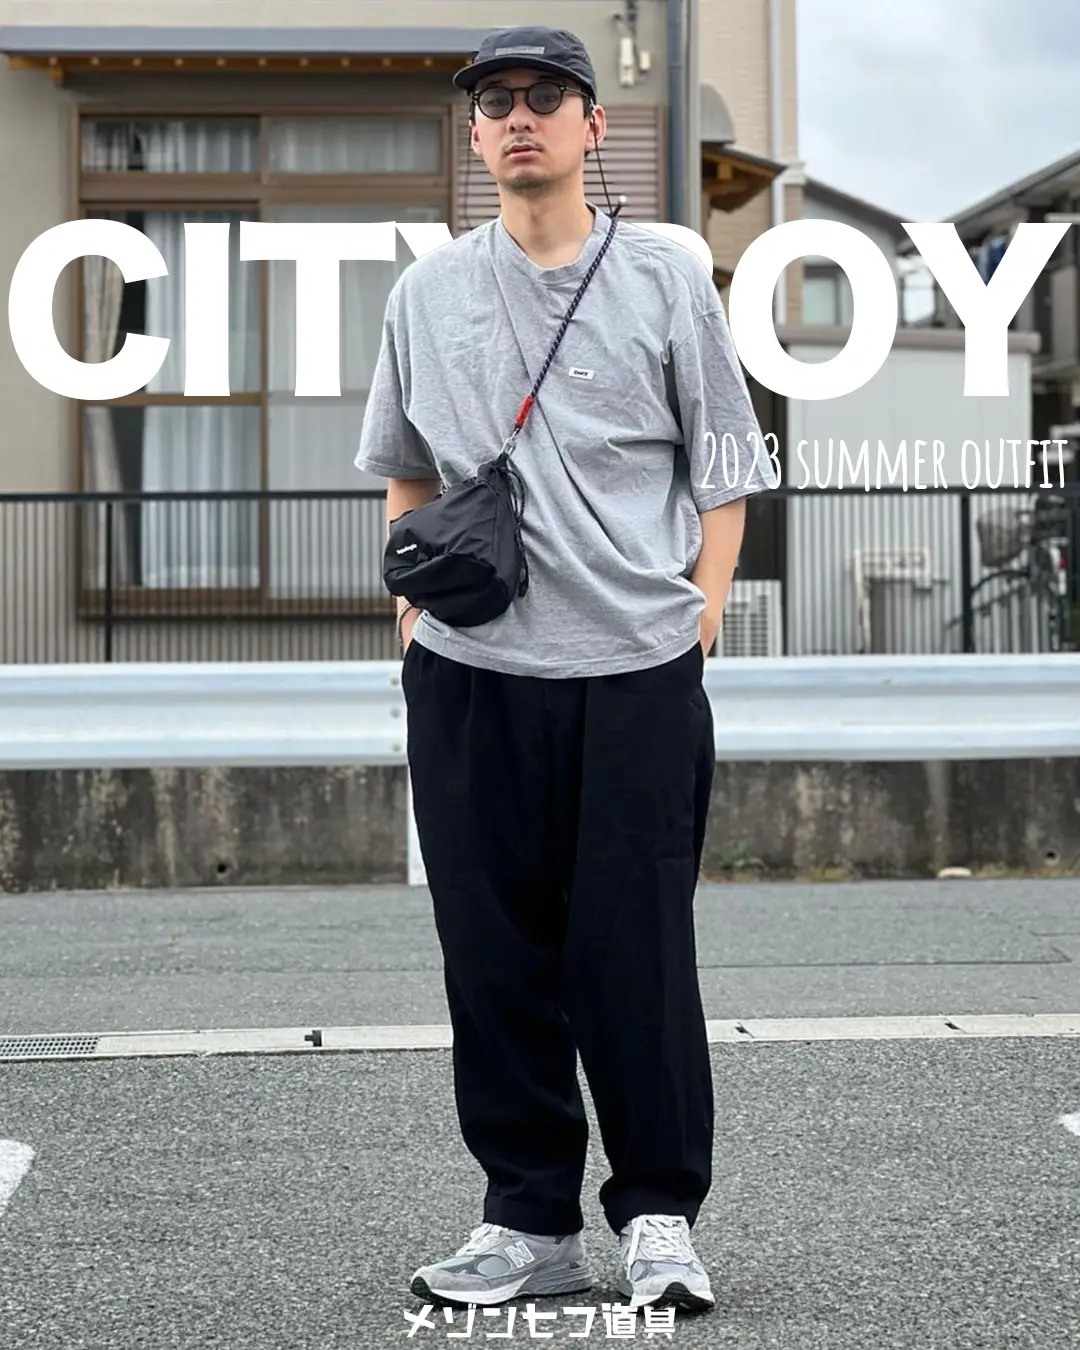 売れ筋公式店 c-boy style 【type2 】city boyコーデ | www 